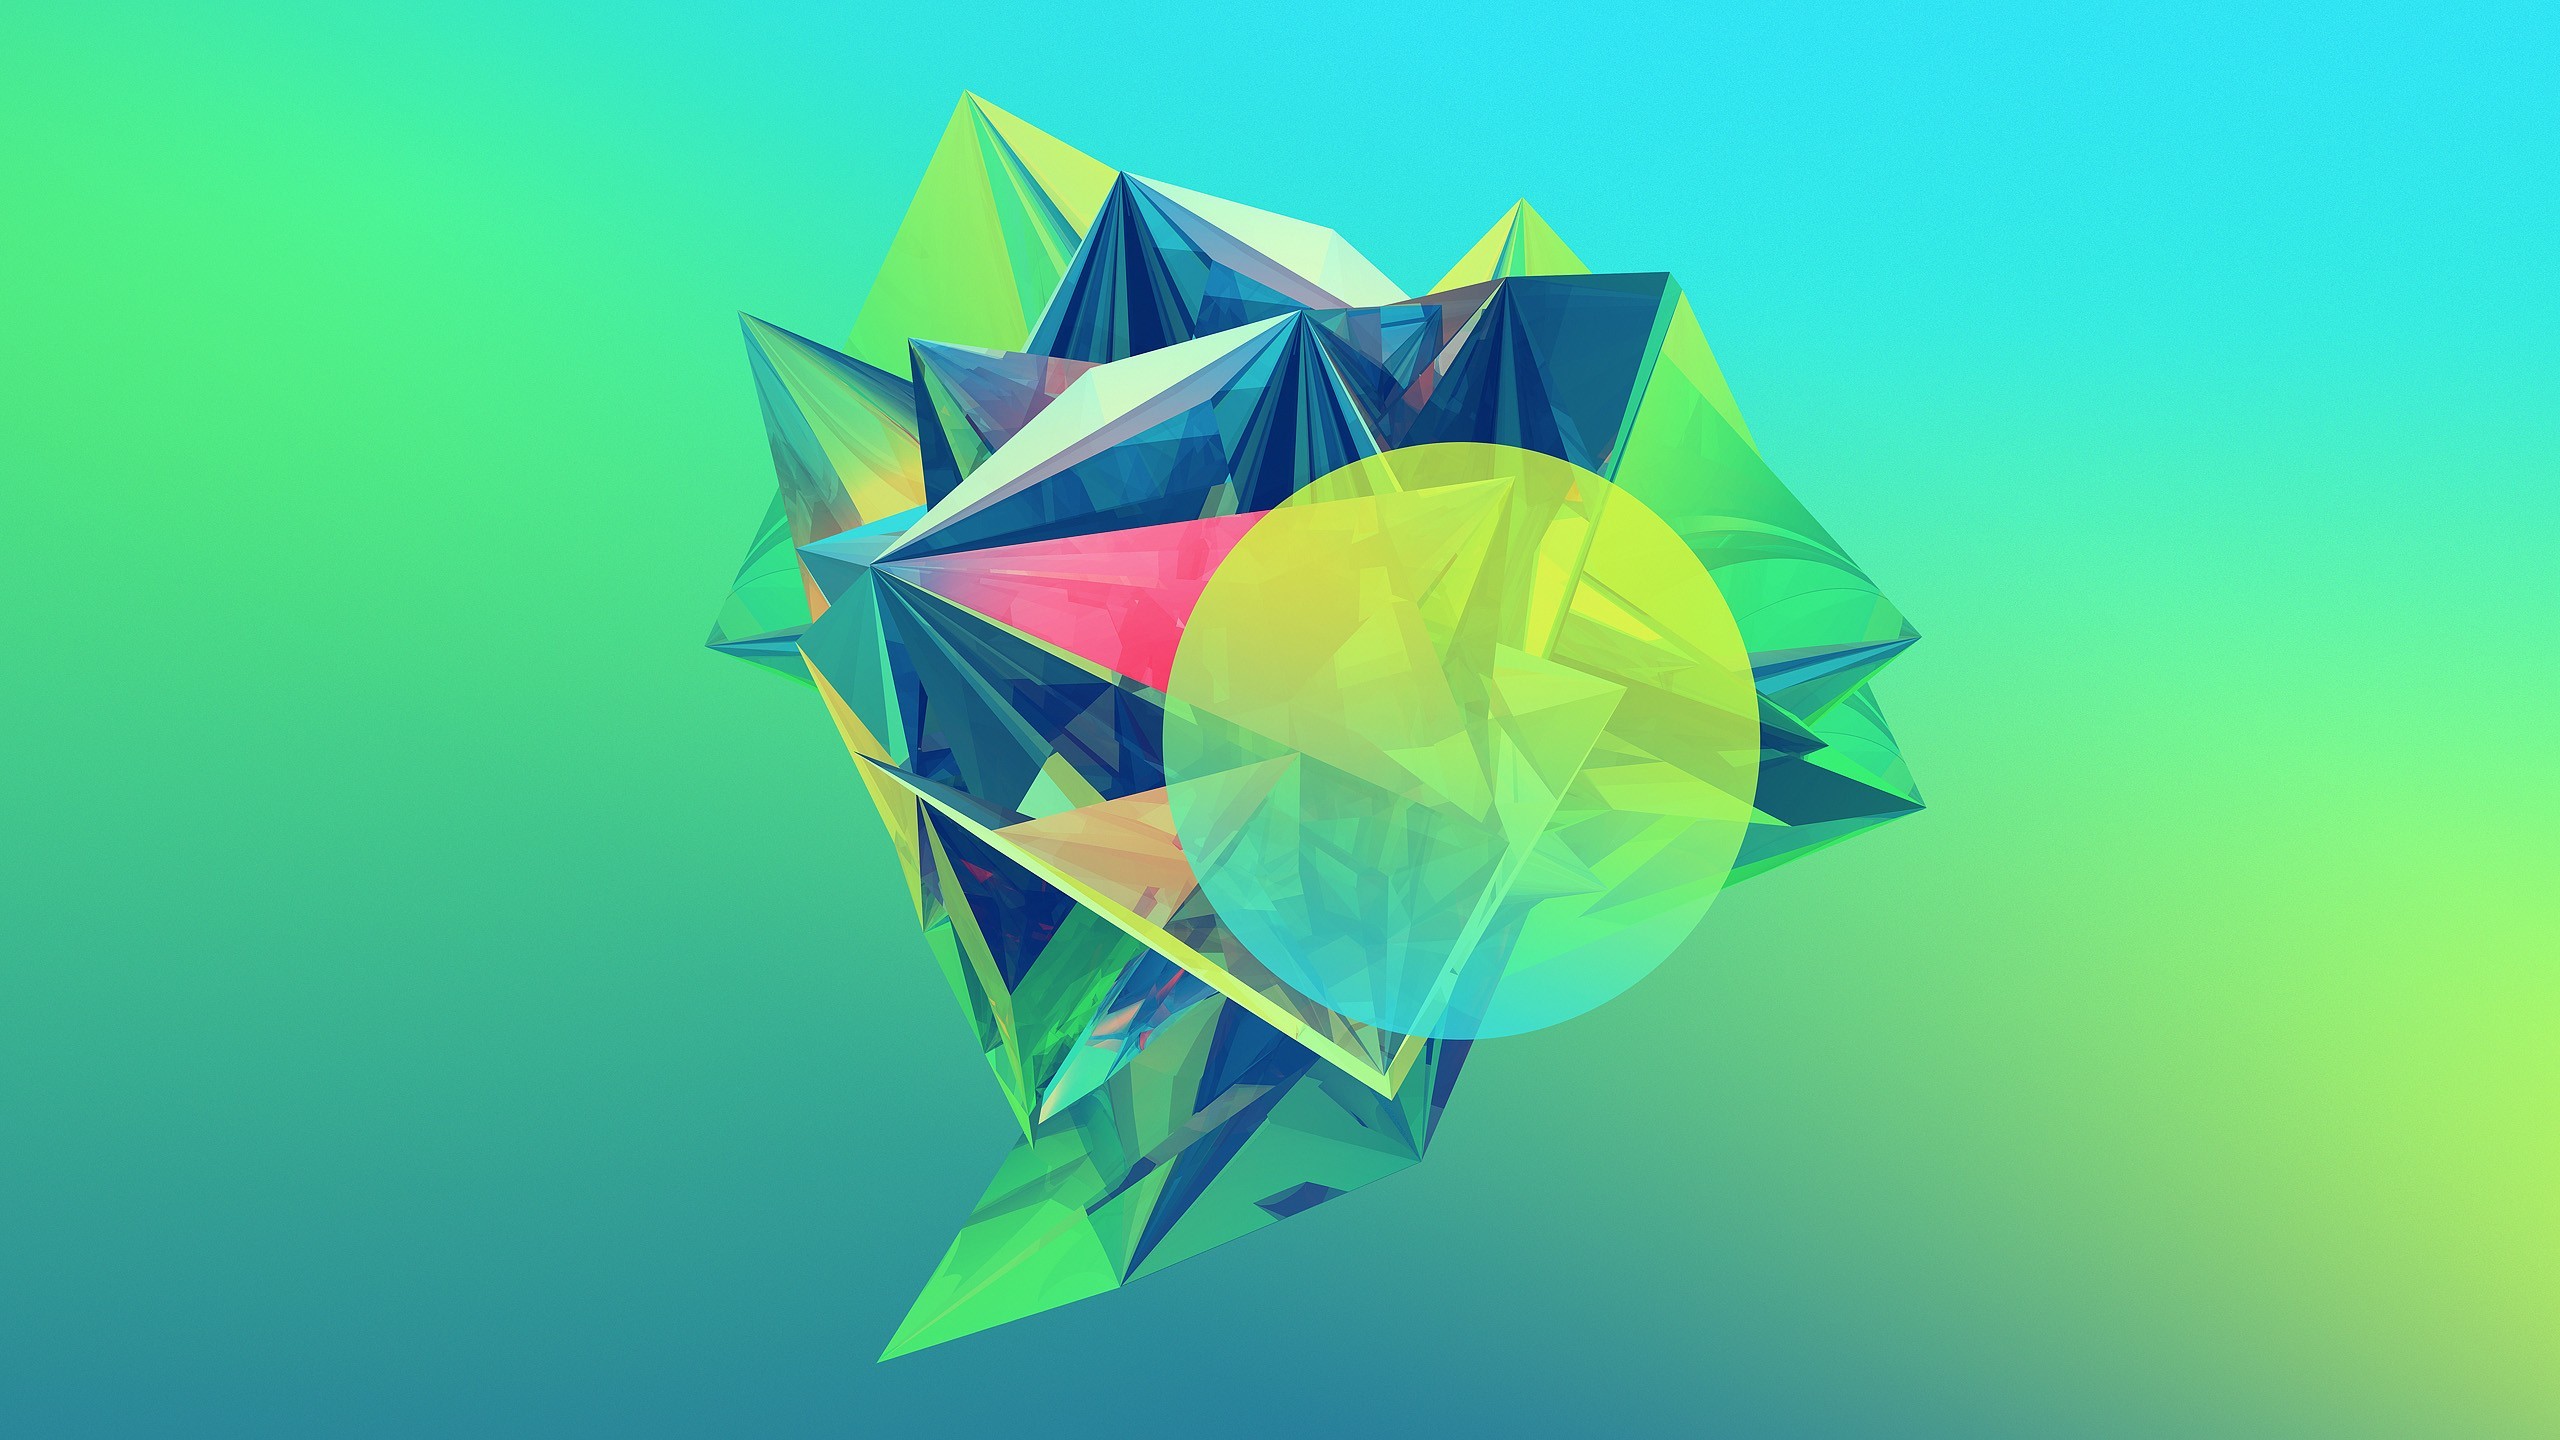 2560x1440 crystaline-geometry.jpg (2560Ã1440) | Backs | Pinterest | Photography  projects